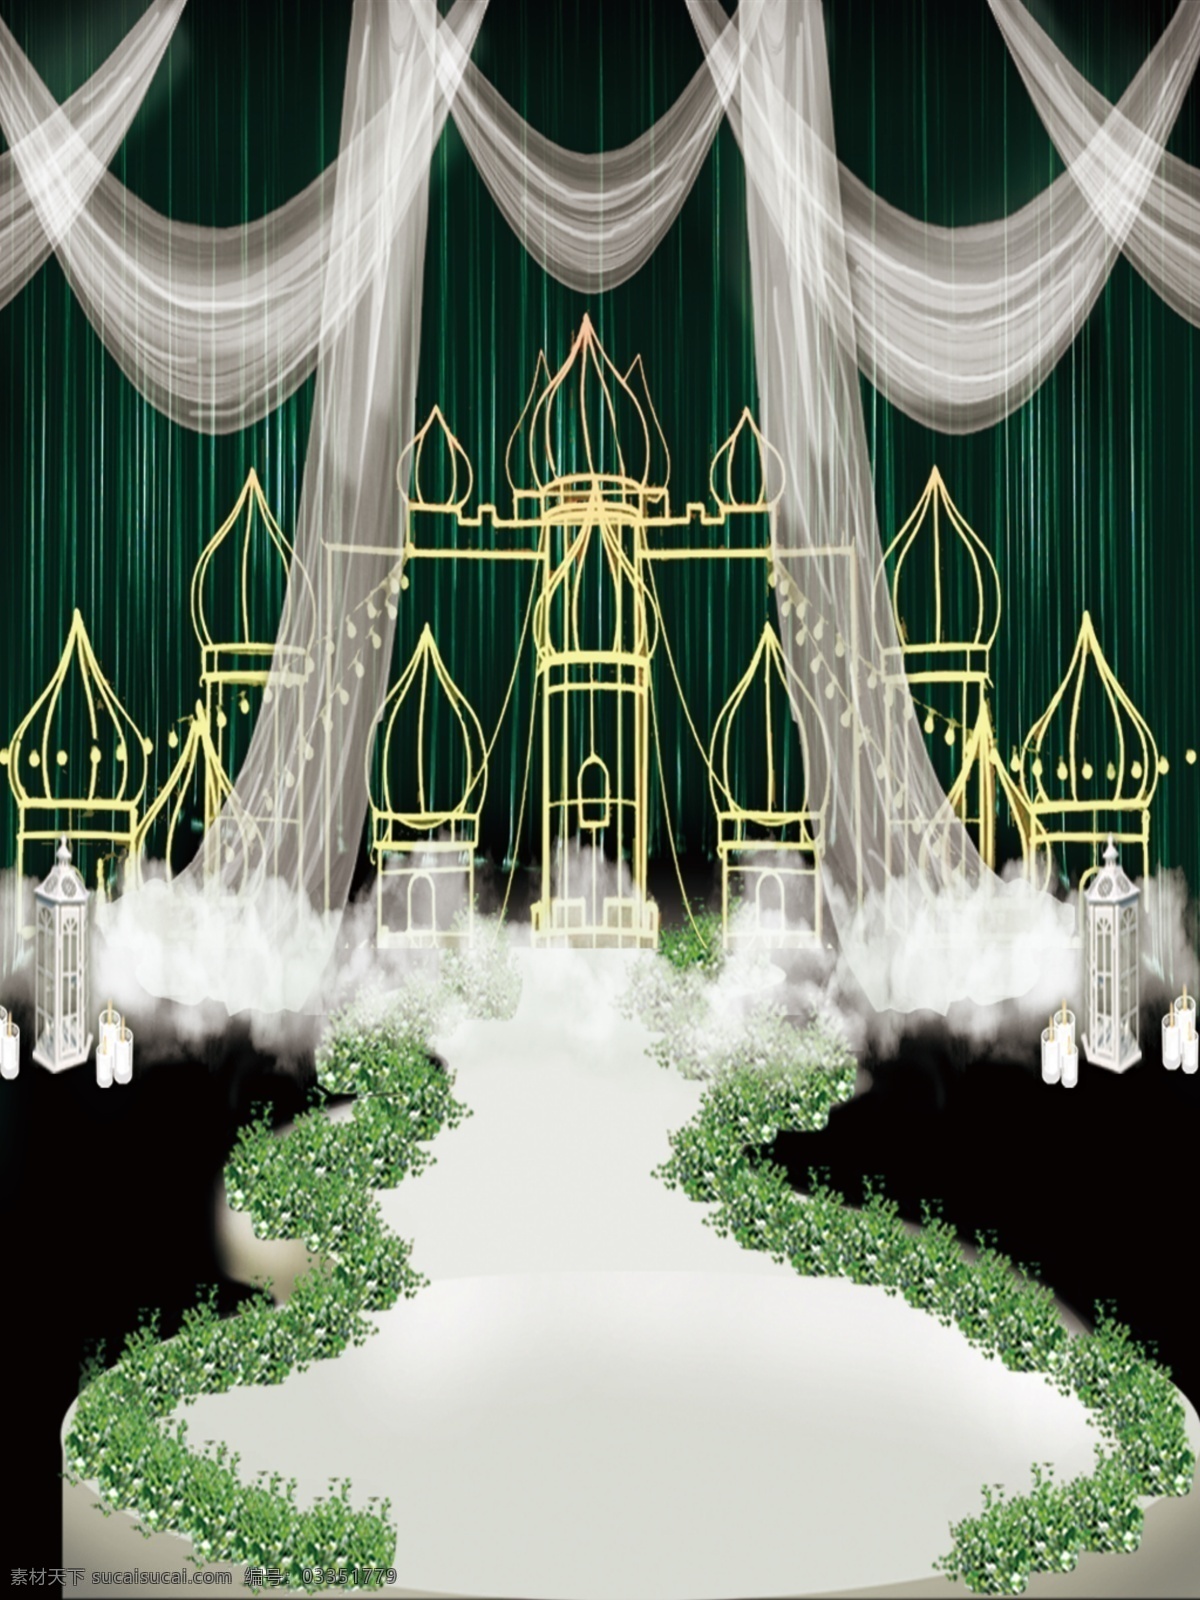 梦幻 墨绿 帷幔 城堡 云朵 婚礼 效果图 墨绿色 不规则舞台